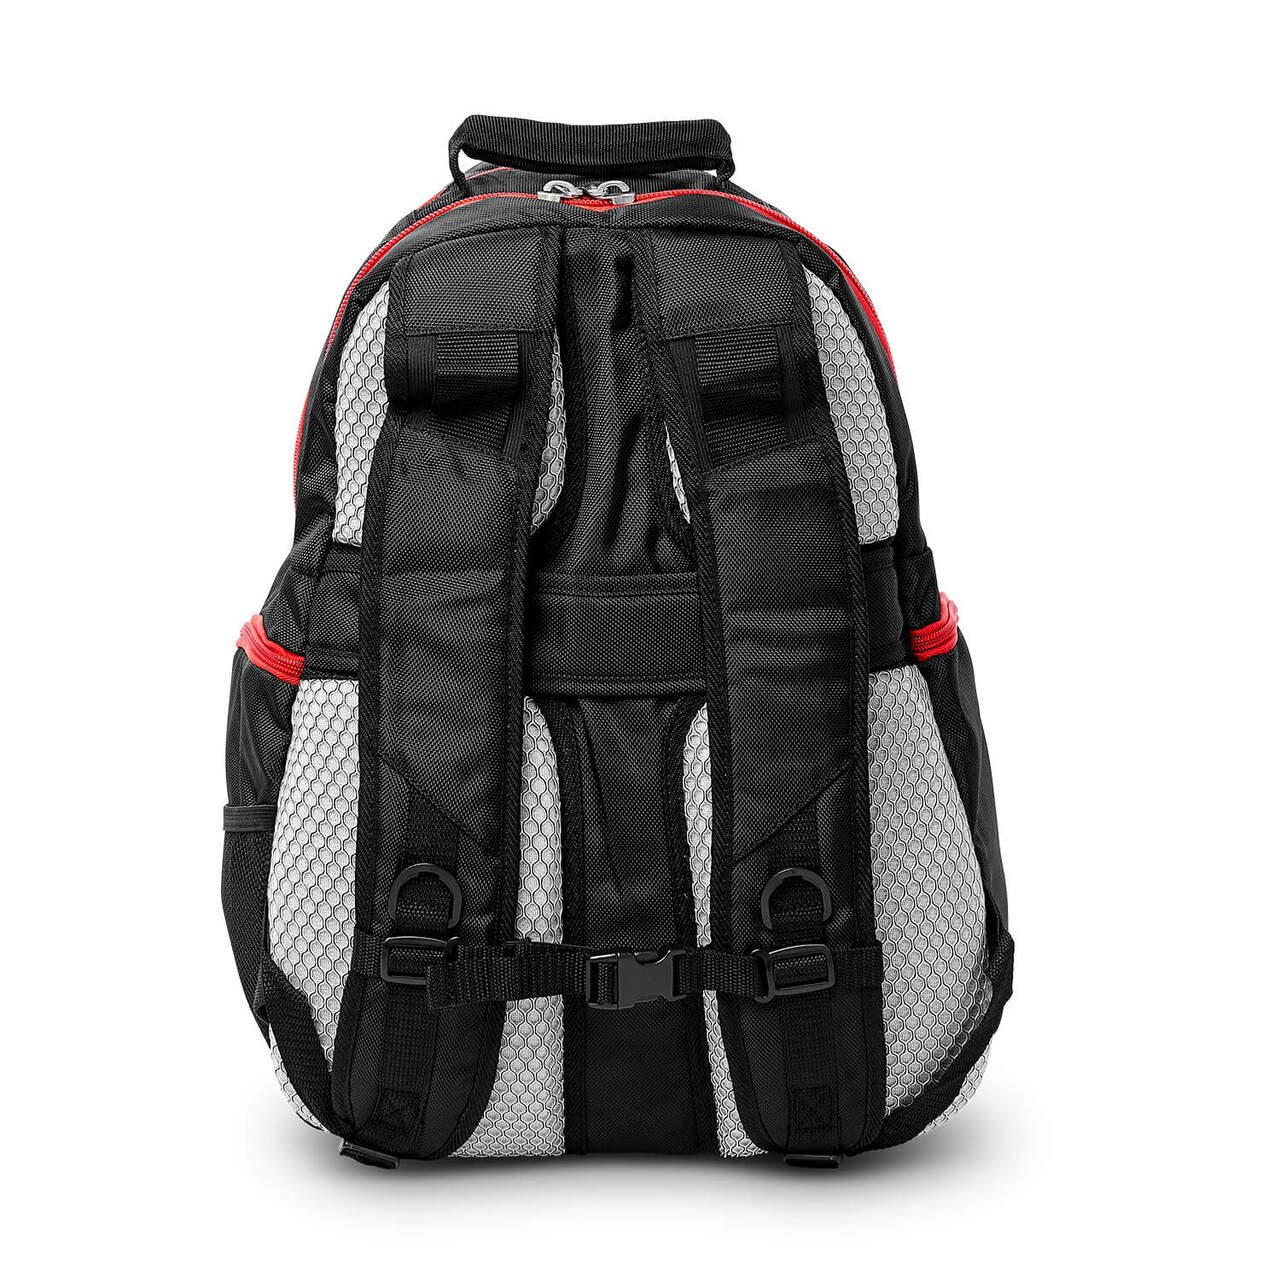 UNLV Backpack | UNLV Rebels Laptop Backpack